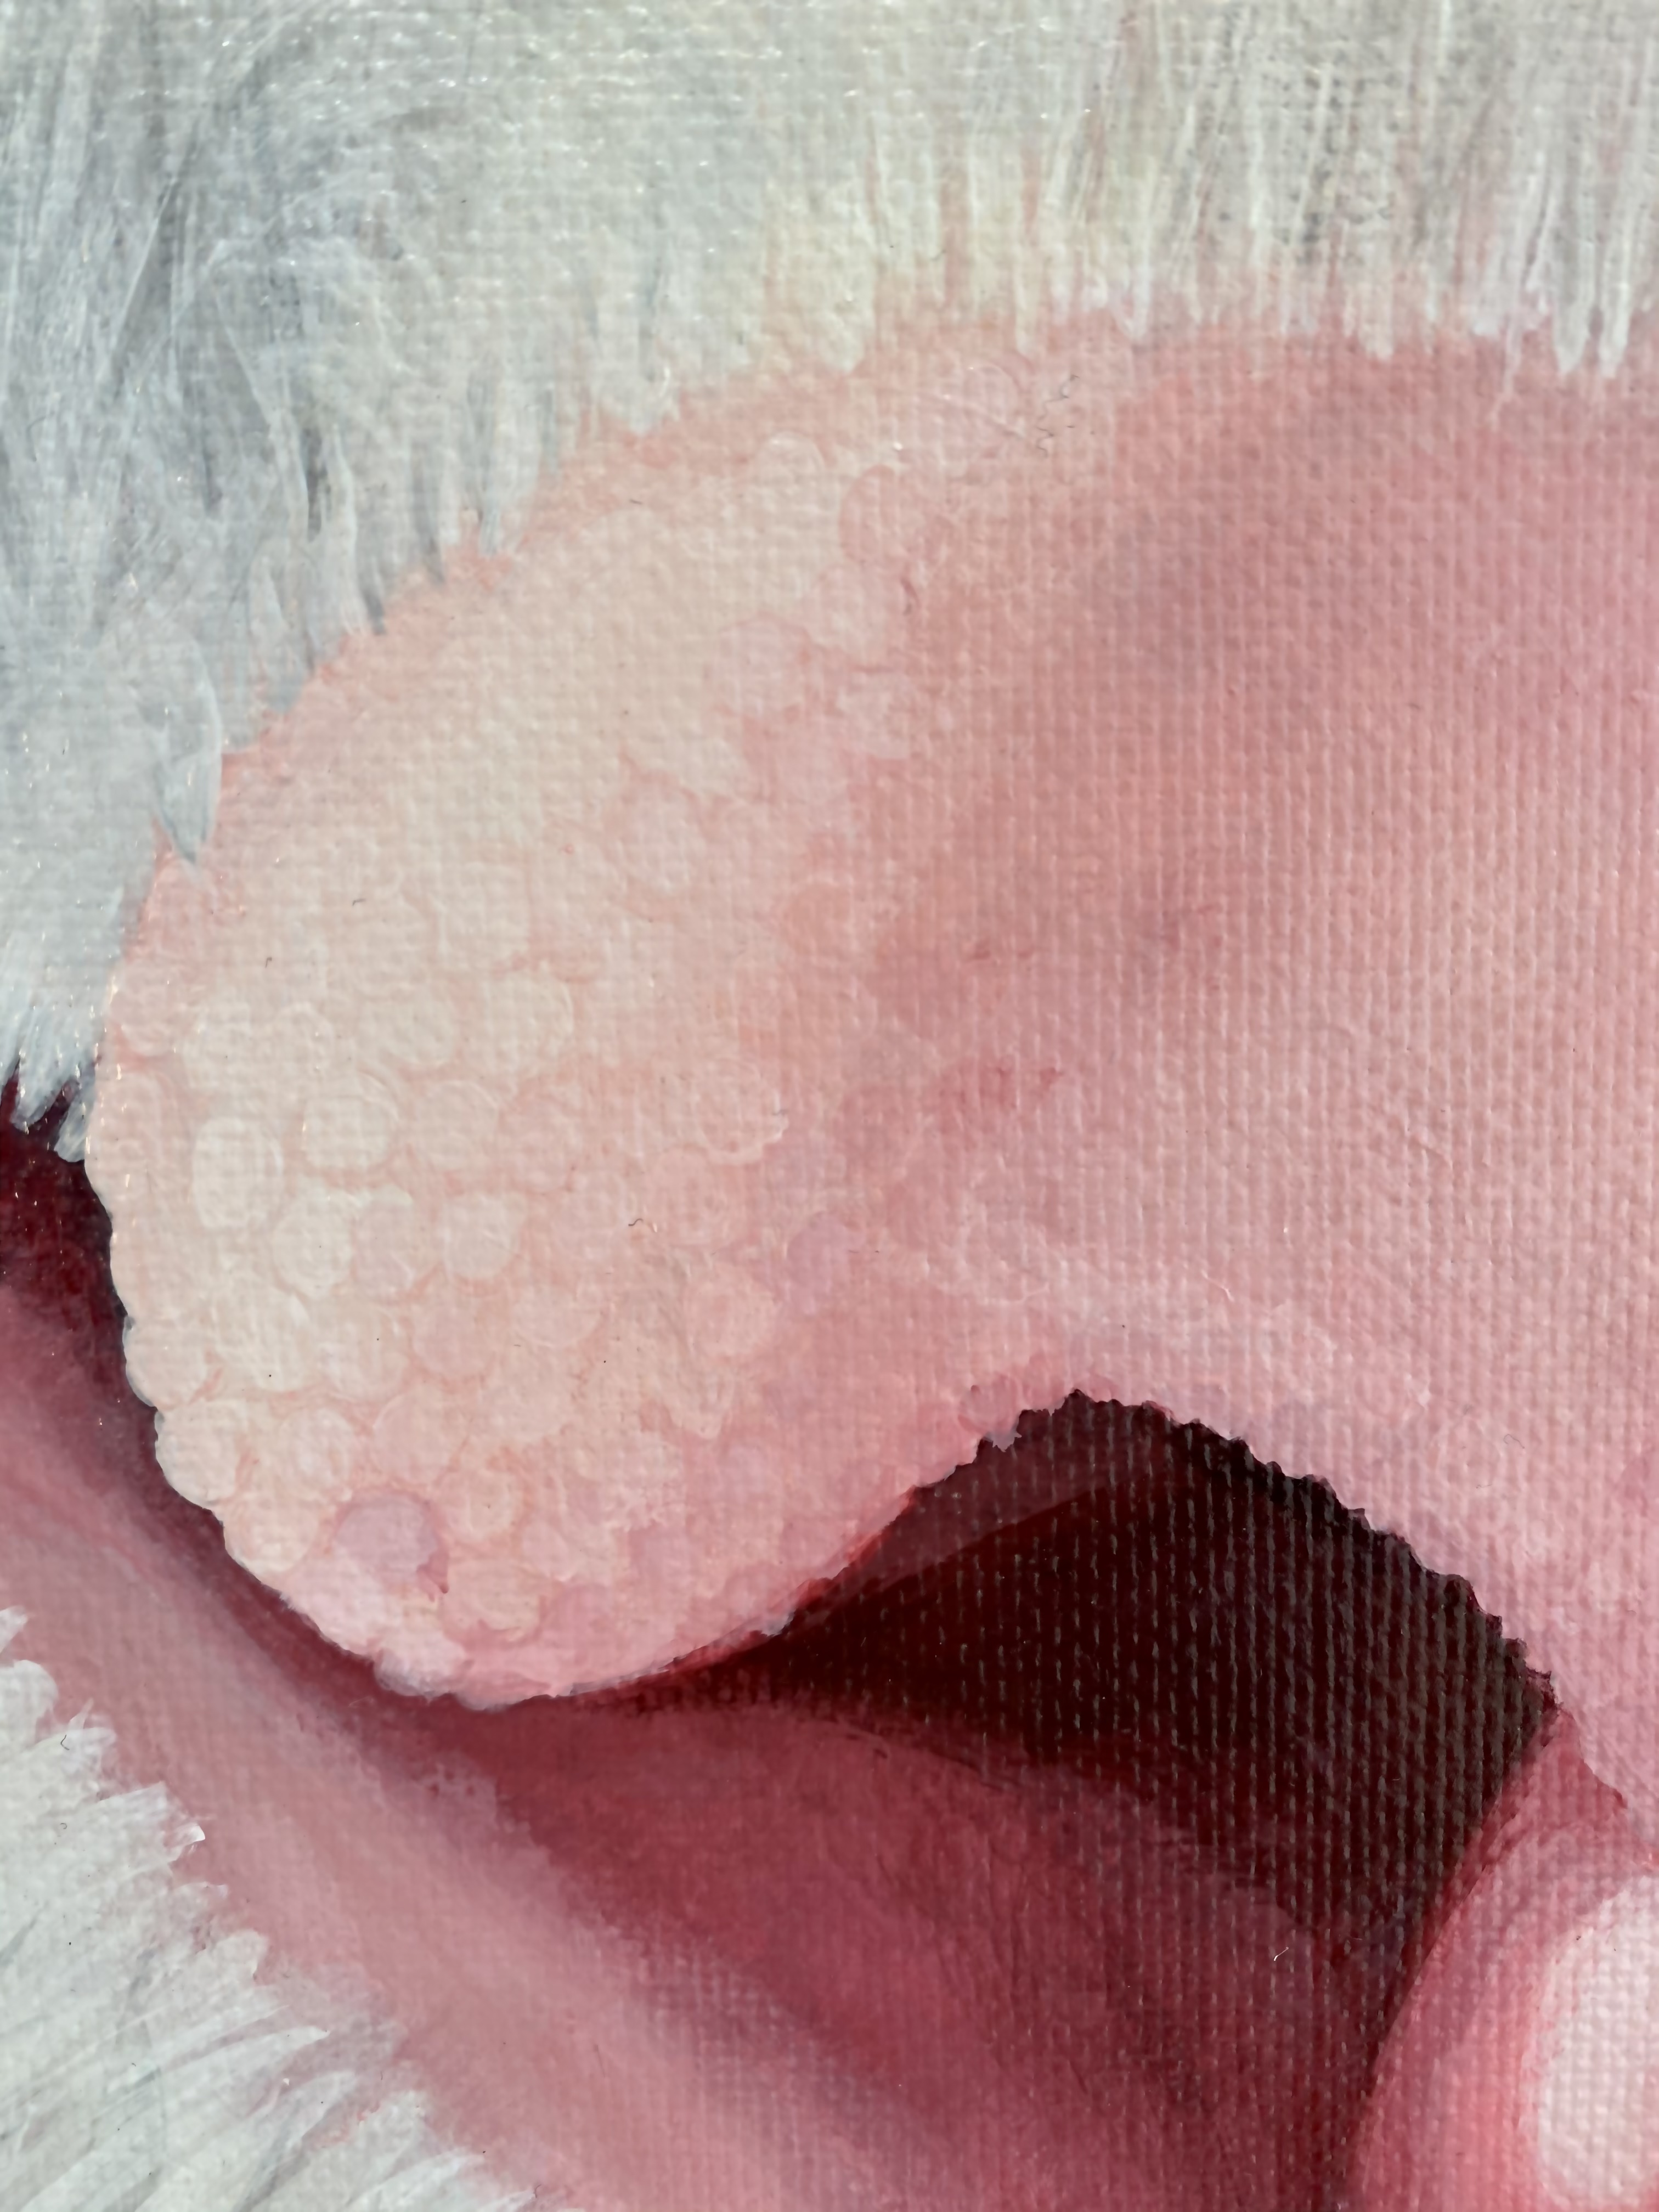 Nose (detail)